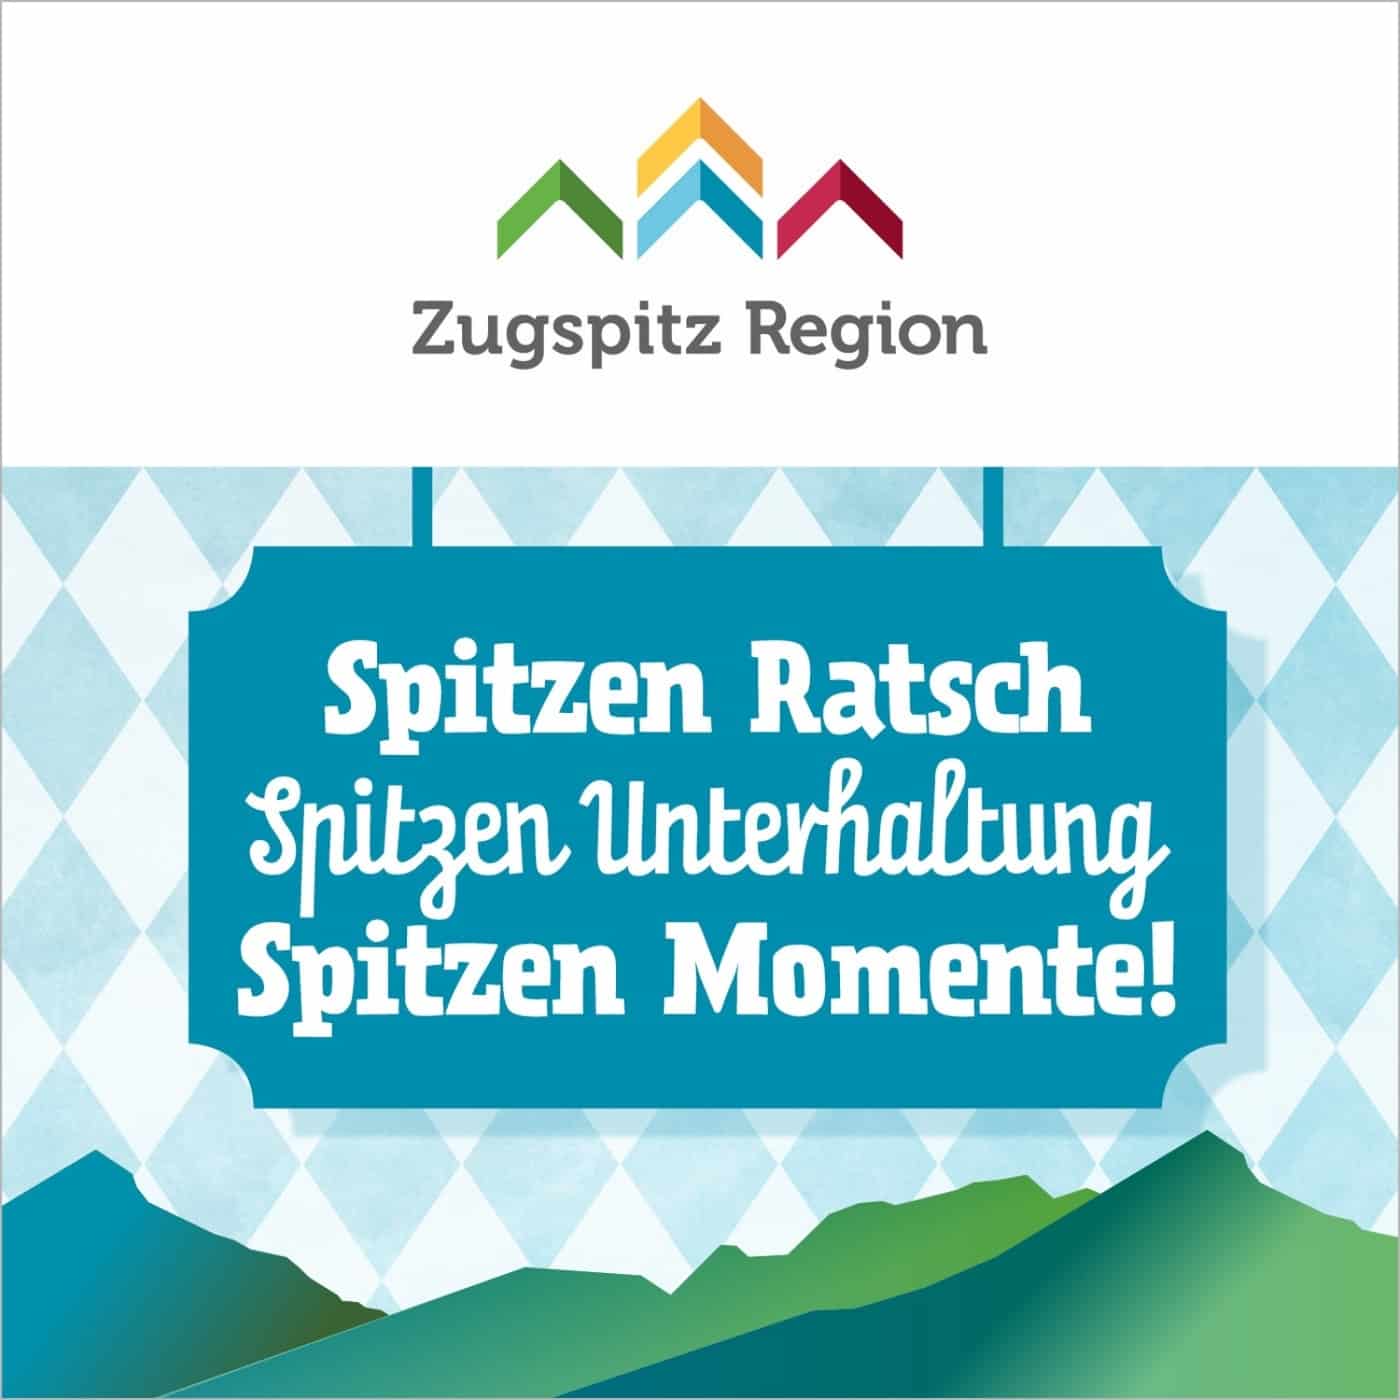 Zugspitz Region - der Reise und Tourismuspodcast